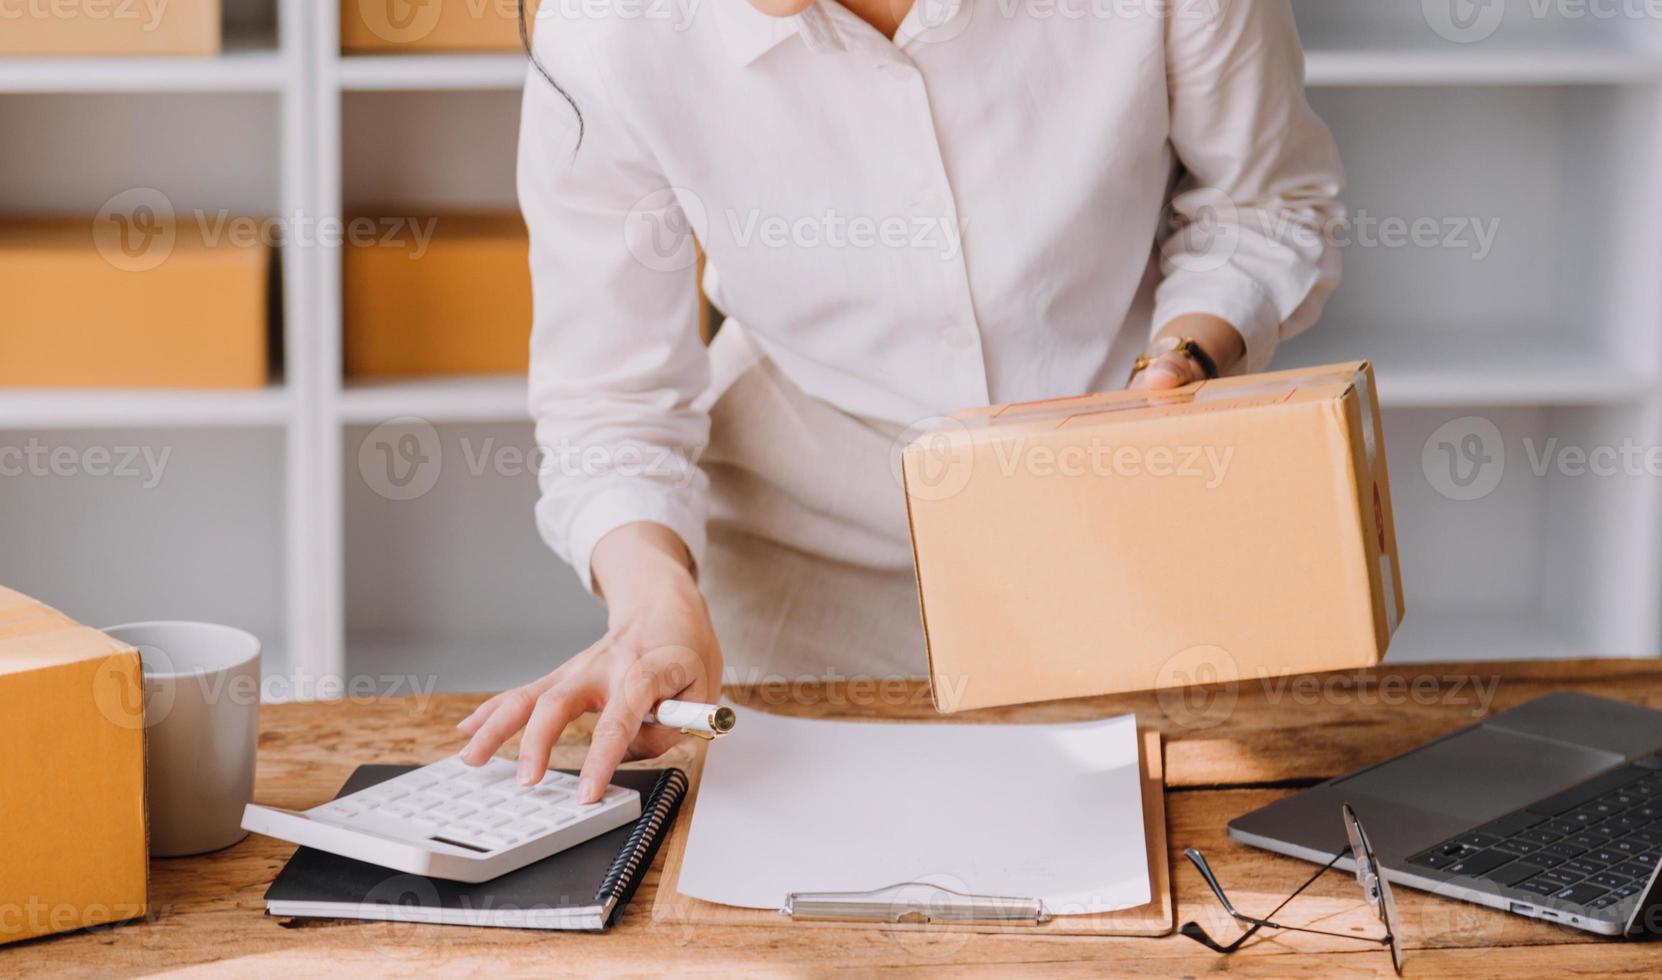 empresaria de pequeñas empresas de nueva creación de una mujer asiática independiente que usa una computadora portátil con una caja de éxito alegre mujer asiática su mano levanta la caja de embalaje de marketing en línea y el concepto de idea de sme de entrega foto